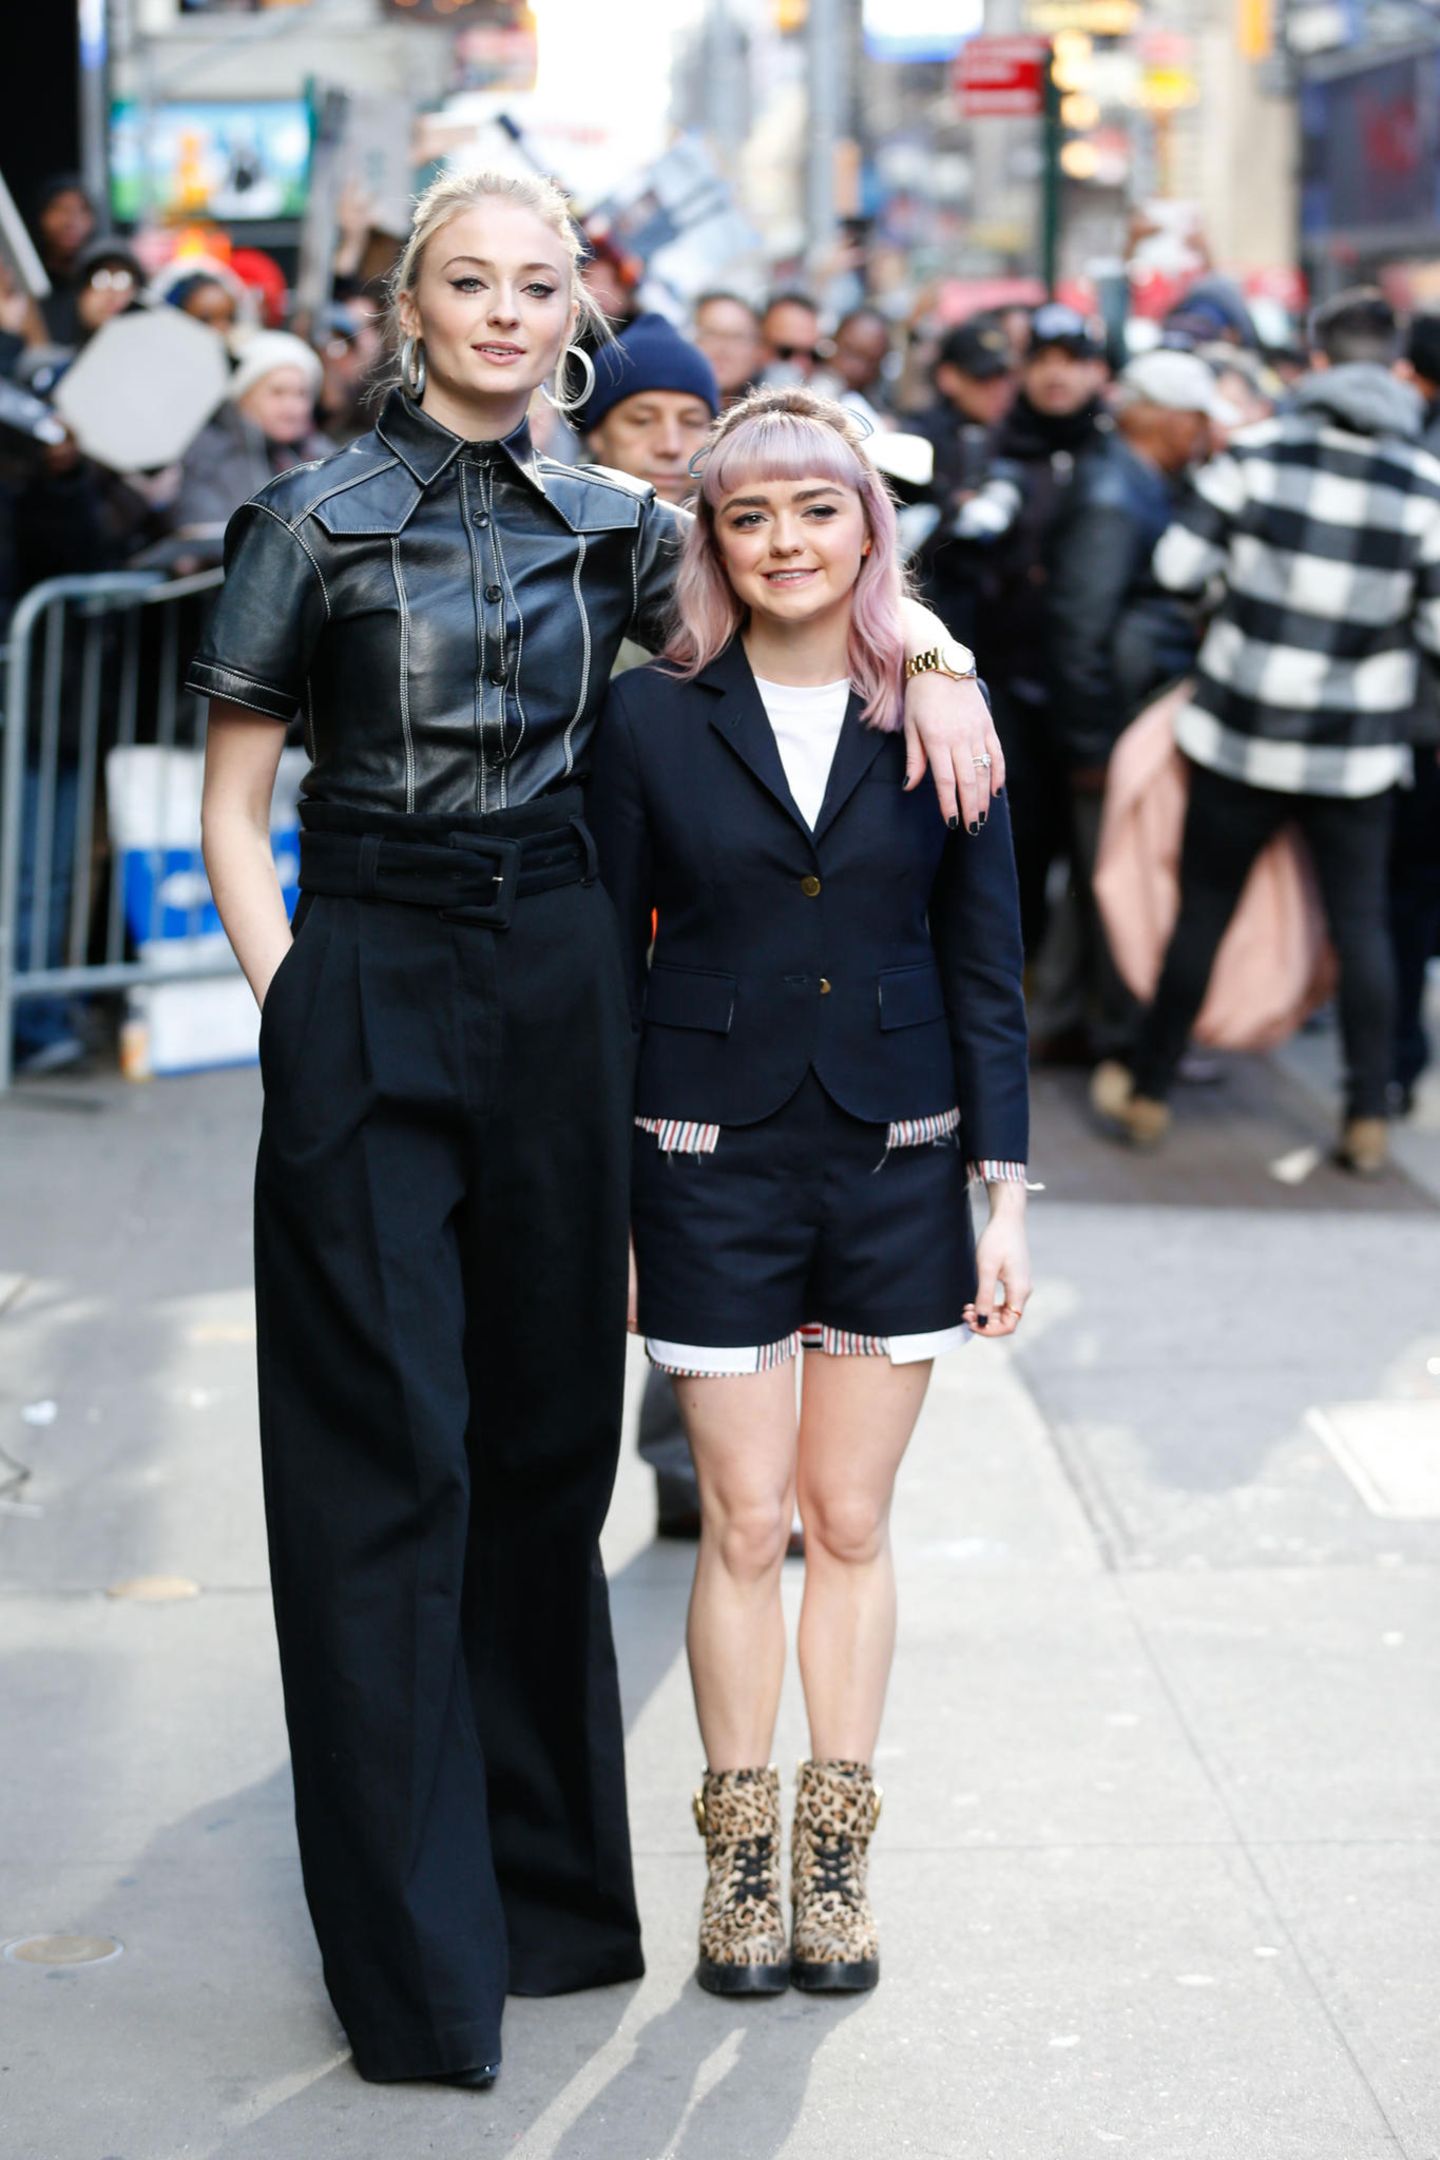 Hätten Sie gedacht, dass die Schauspielerinnen Sophie Turner und Maisie Williams ganze 20 Zentimeter Körpergröße unterscheiden? Uns ist es erst im direkten Vergleich bei einem Event in New York aufgefallen. Doch trotz eines enormen Größenunterschieds, haben die hübschen Britinnen auch eine großartige Gemeinsamkeit: Sie sind beide in der Erfolgsserie "Game of Thrones" zu sehen. 